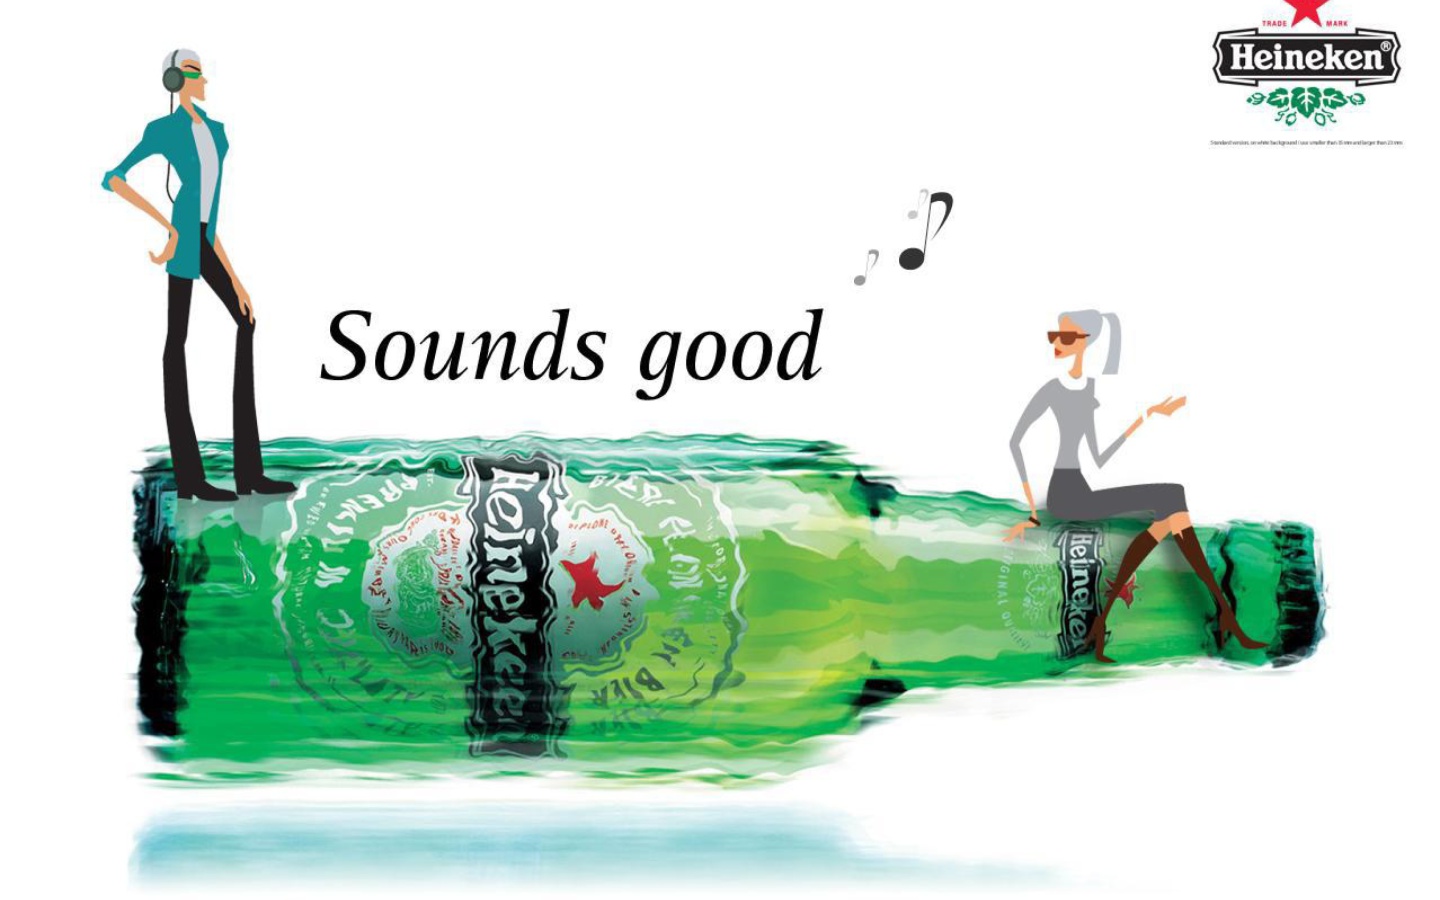 Das Heineken, Sounds good Wallpaper 1440x900